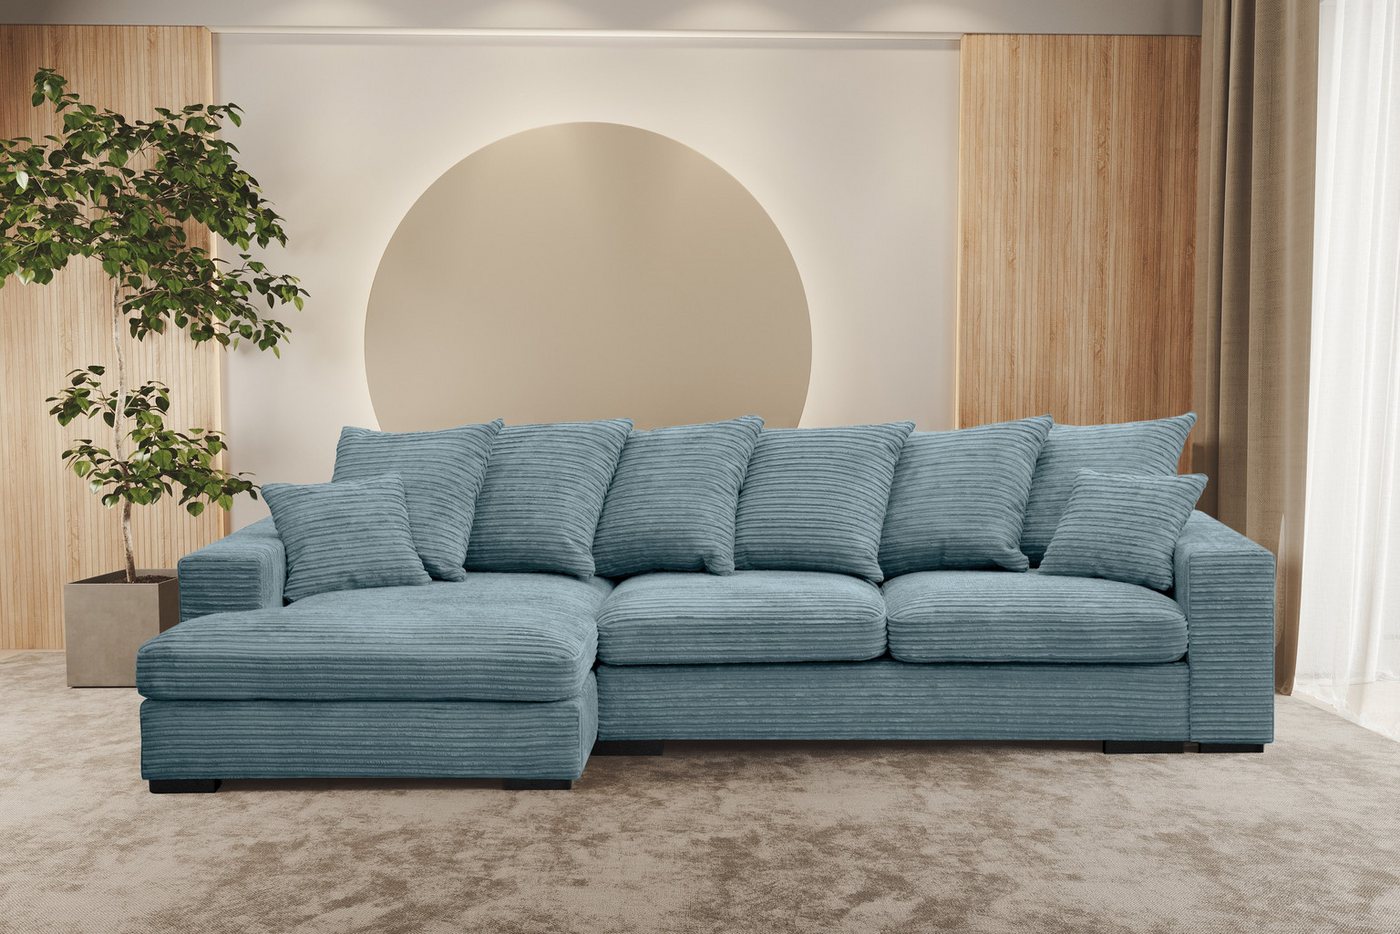 Kaiser Möbel Ottomane Ecksofa Sofa L-form, Couch L-form Gabon stoff Zoom Ottomane von Kaiser Möbel